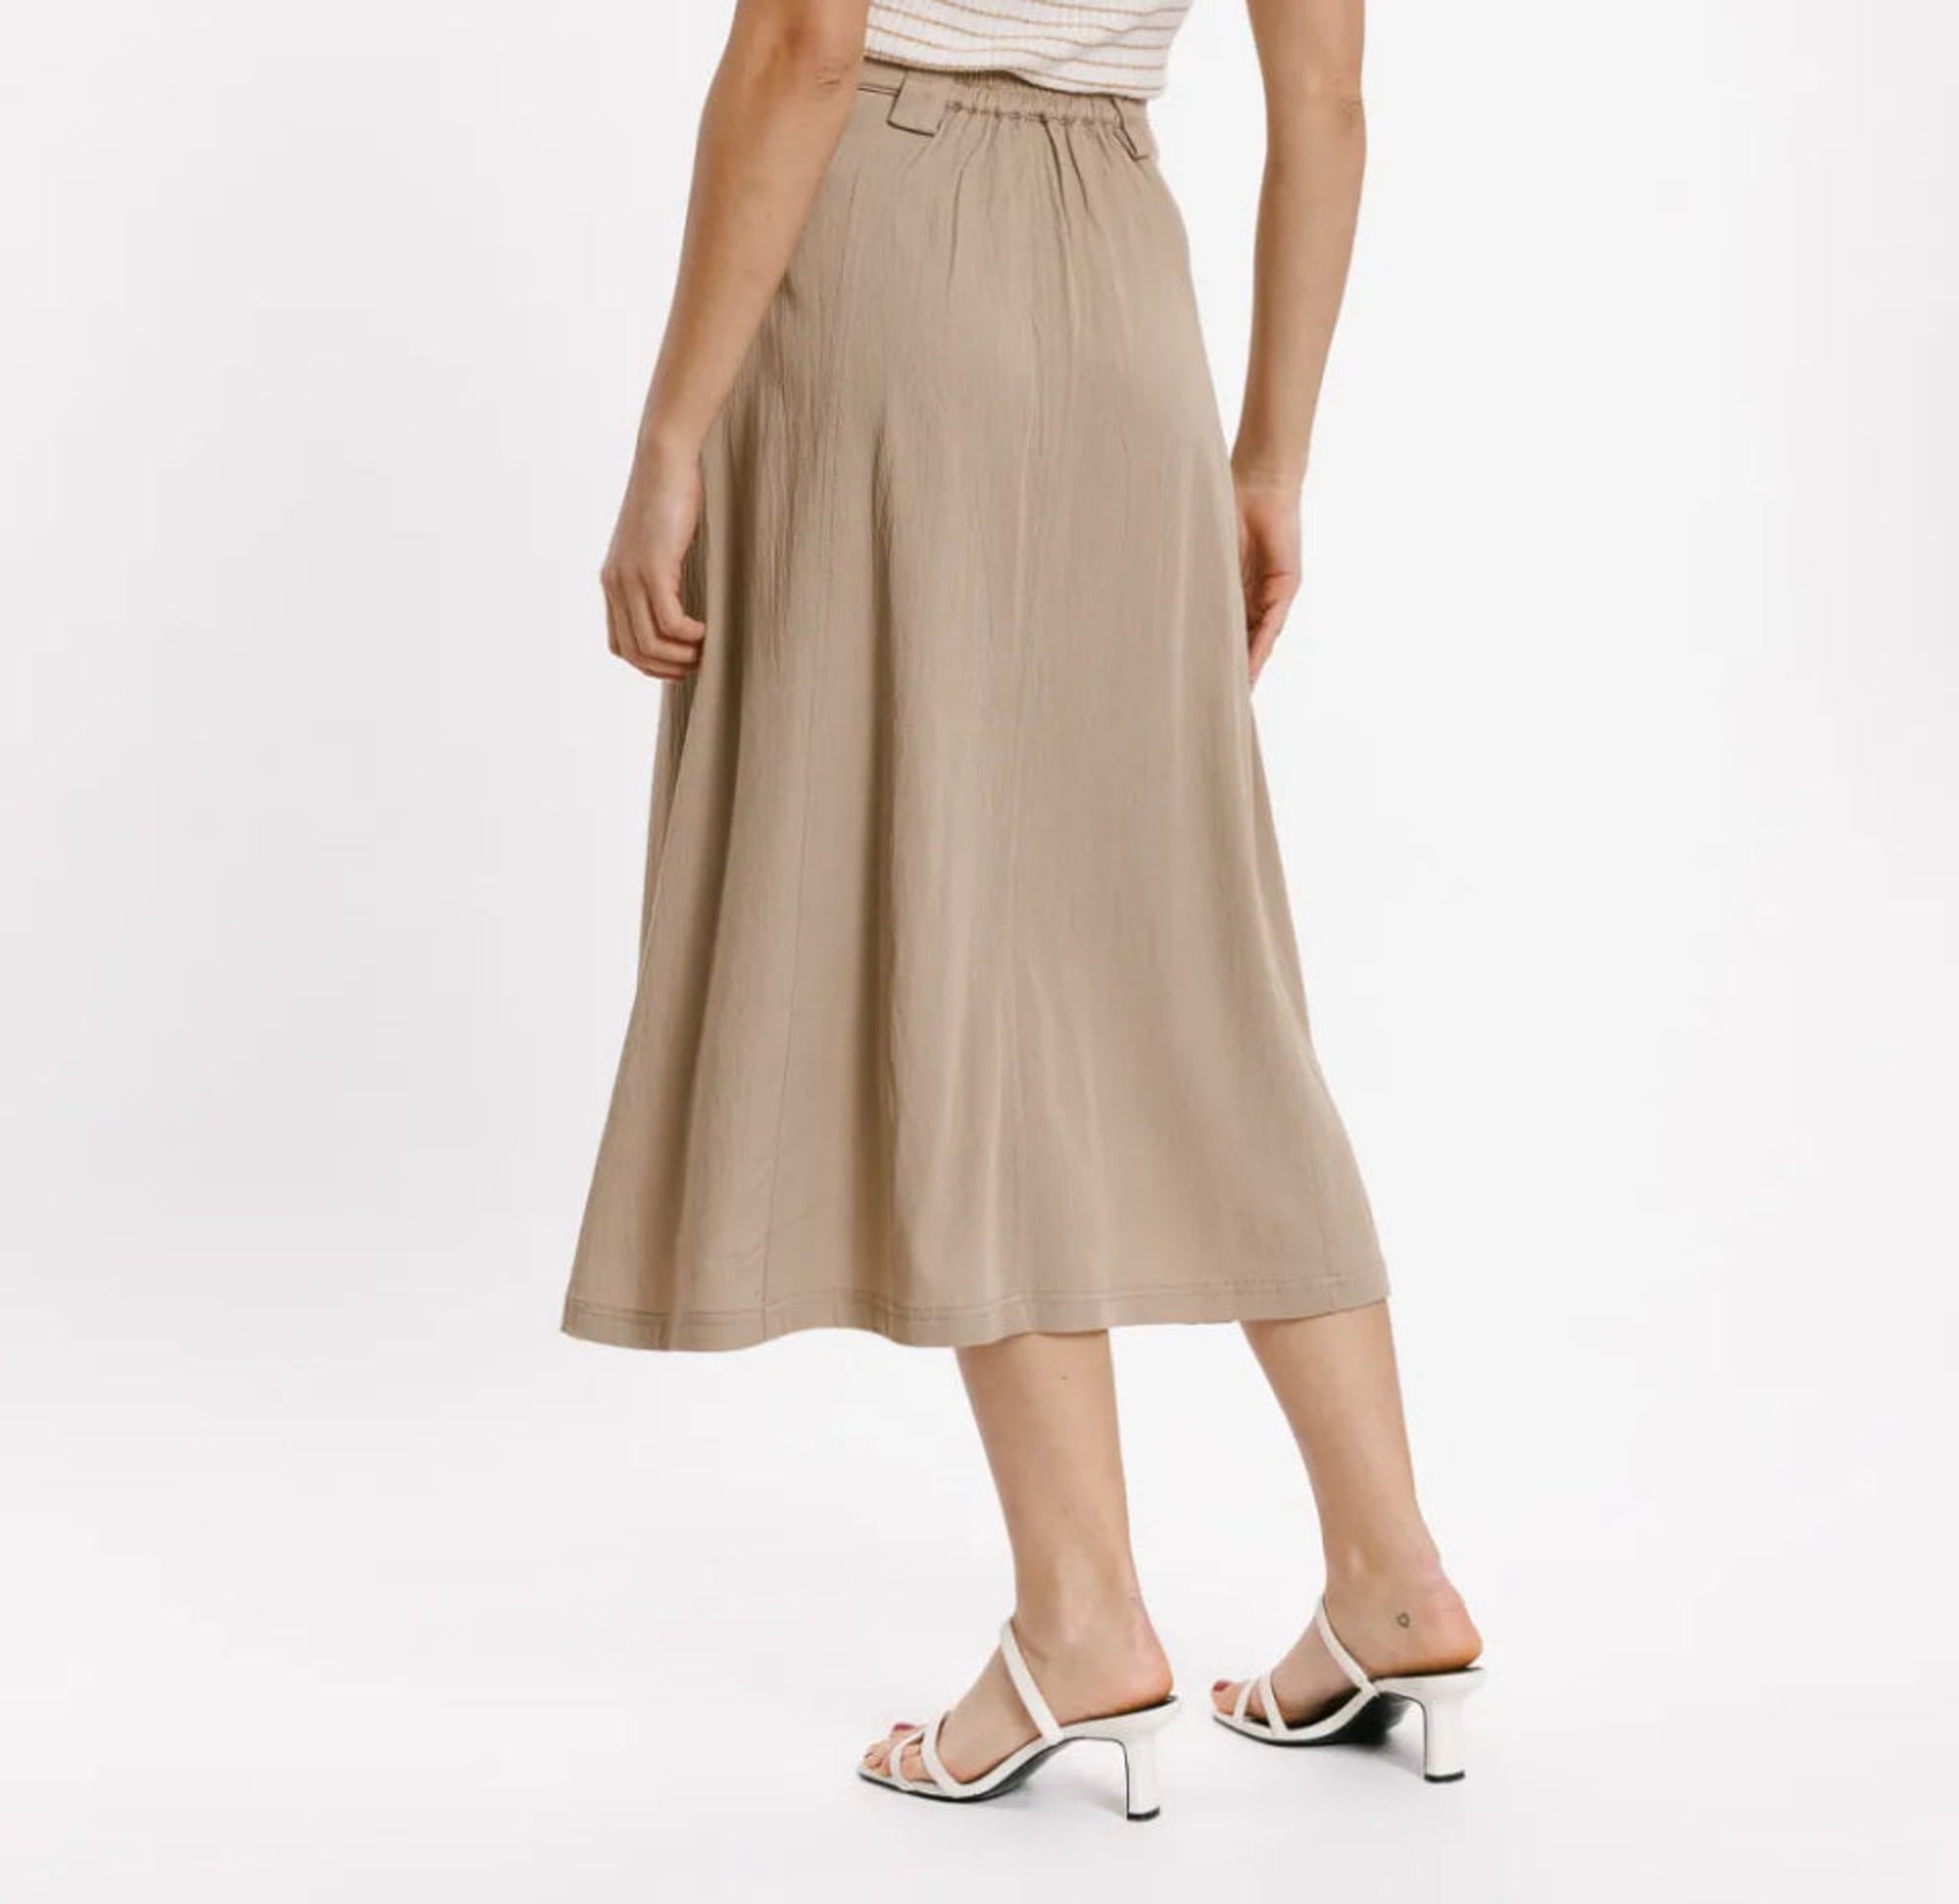 Sweewe Paris Tan Maxi Skirt - clever alice